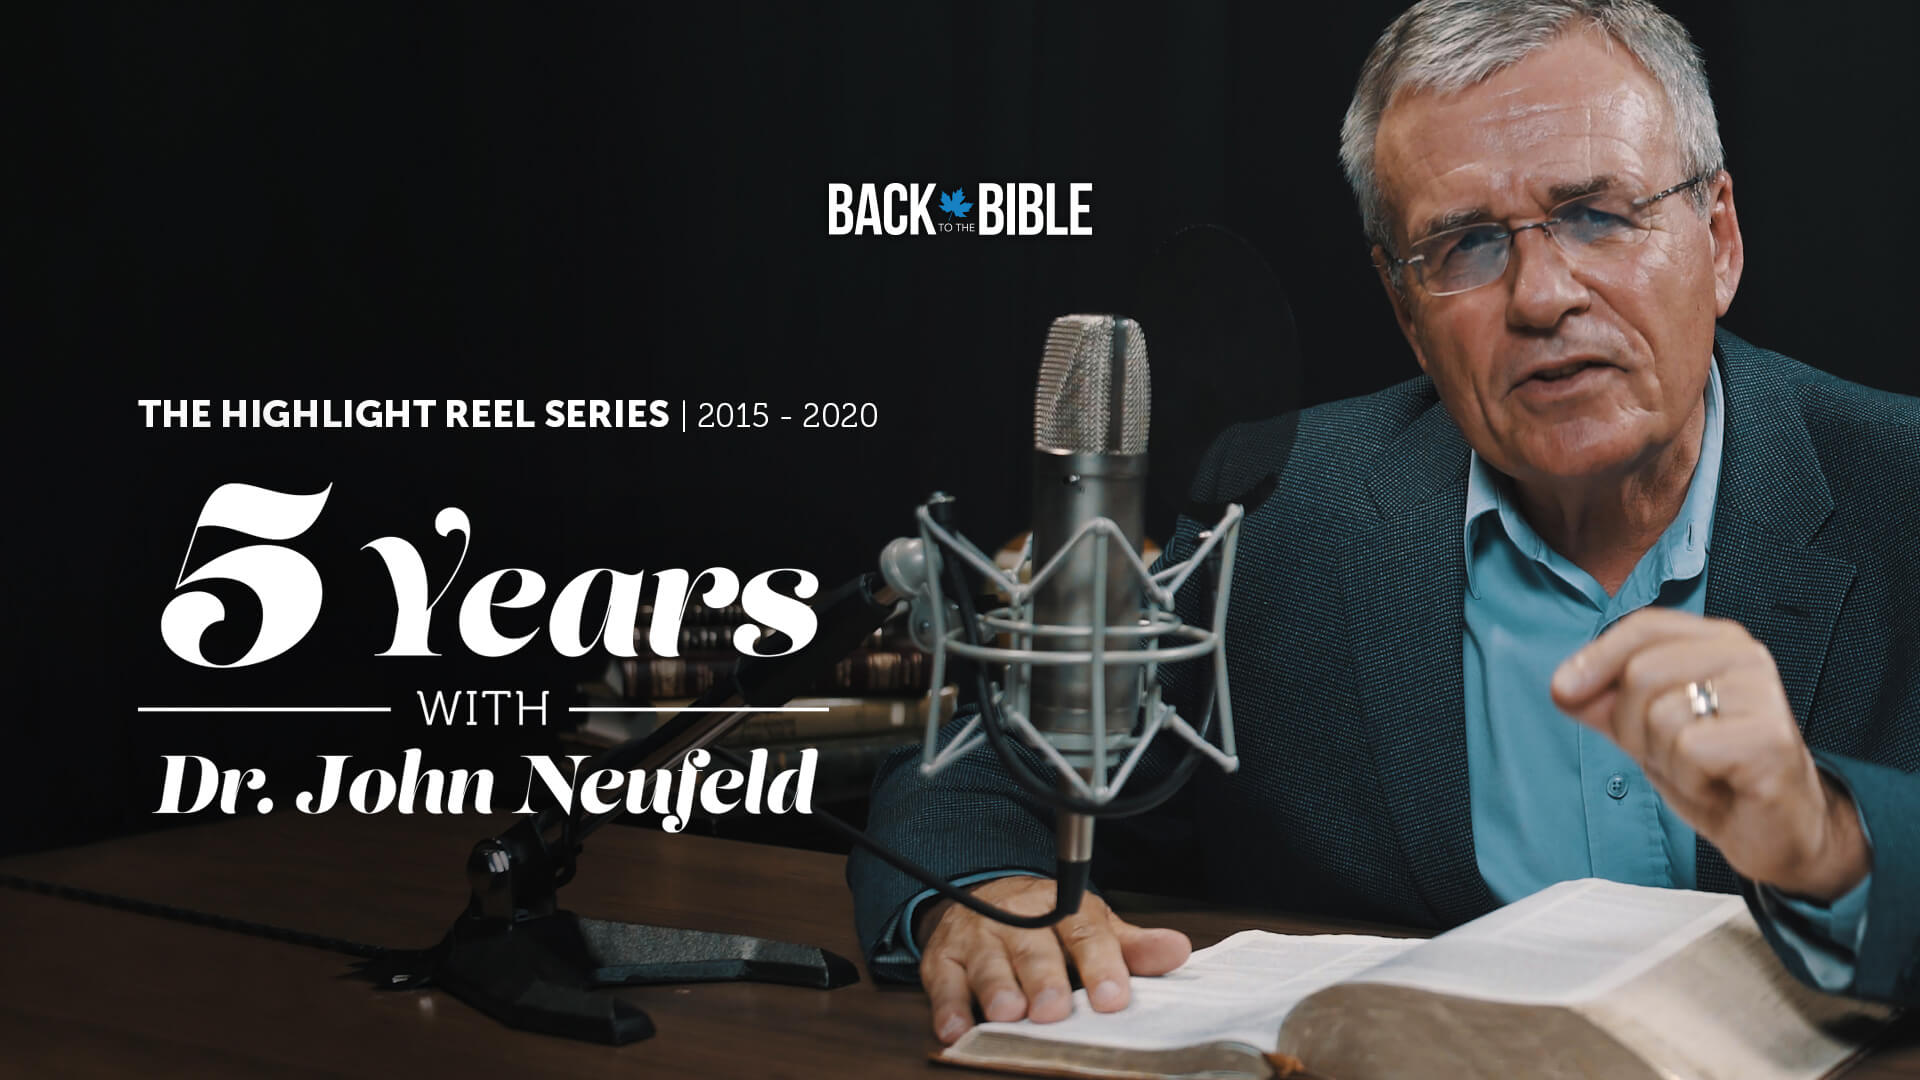 Highlight Reel Series: 5 Years of Dr. John Neufeld